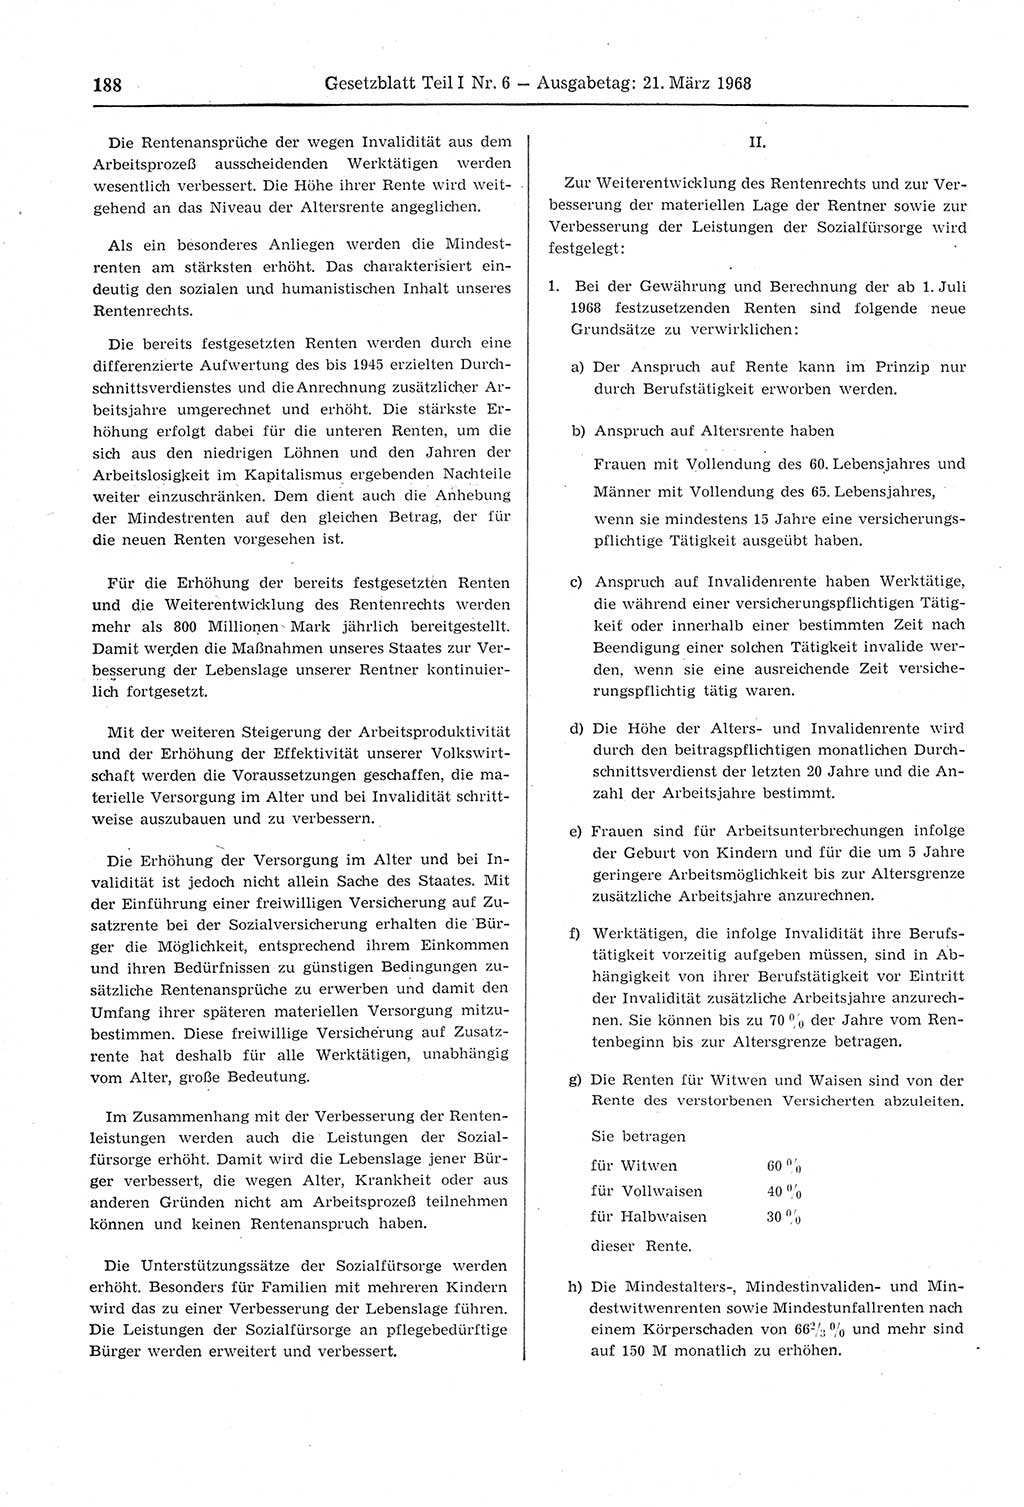 Gesetzblatt (GBl.) der Deutschen Demokratischen Republik (DDR) Teil Ⅰ 1968, Seite 188 (GBl. DDR Ⅰ 1968, S. 188)